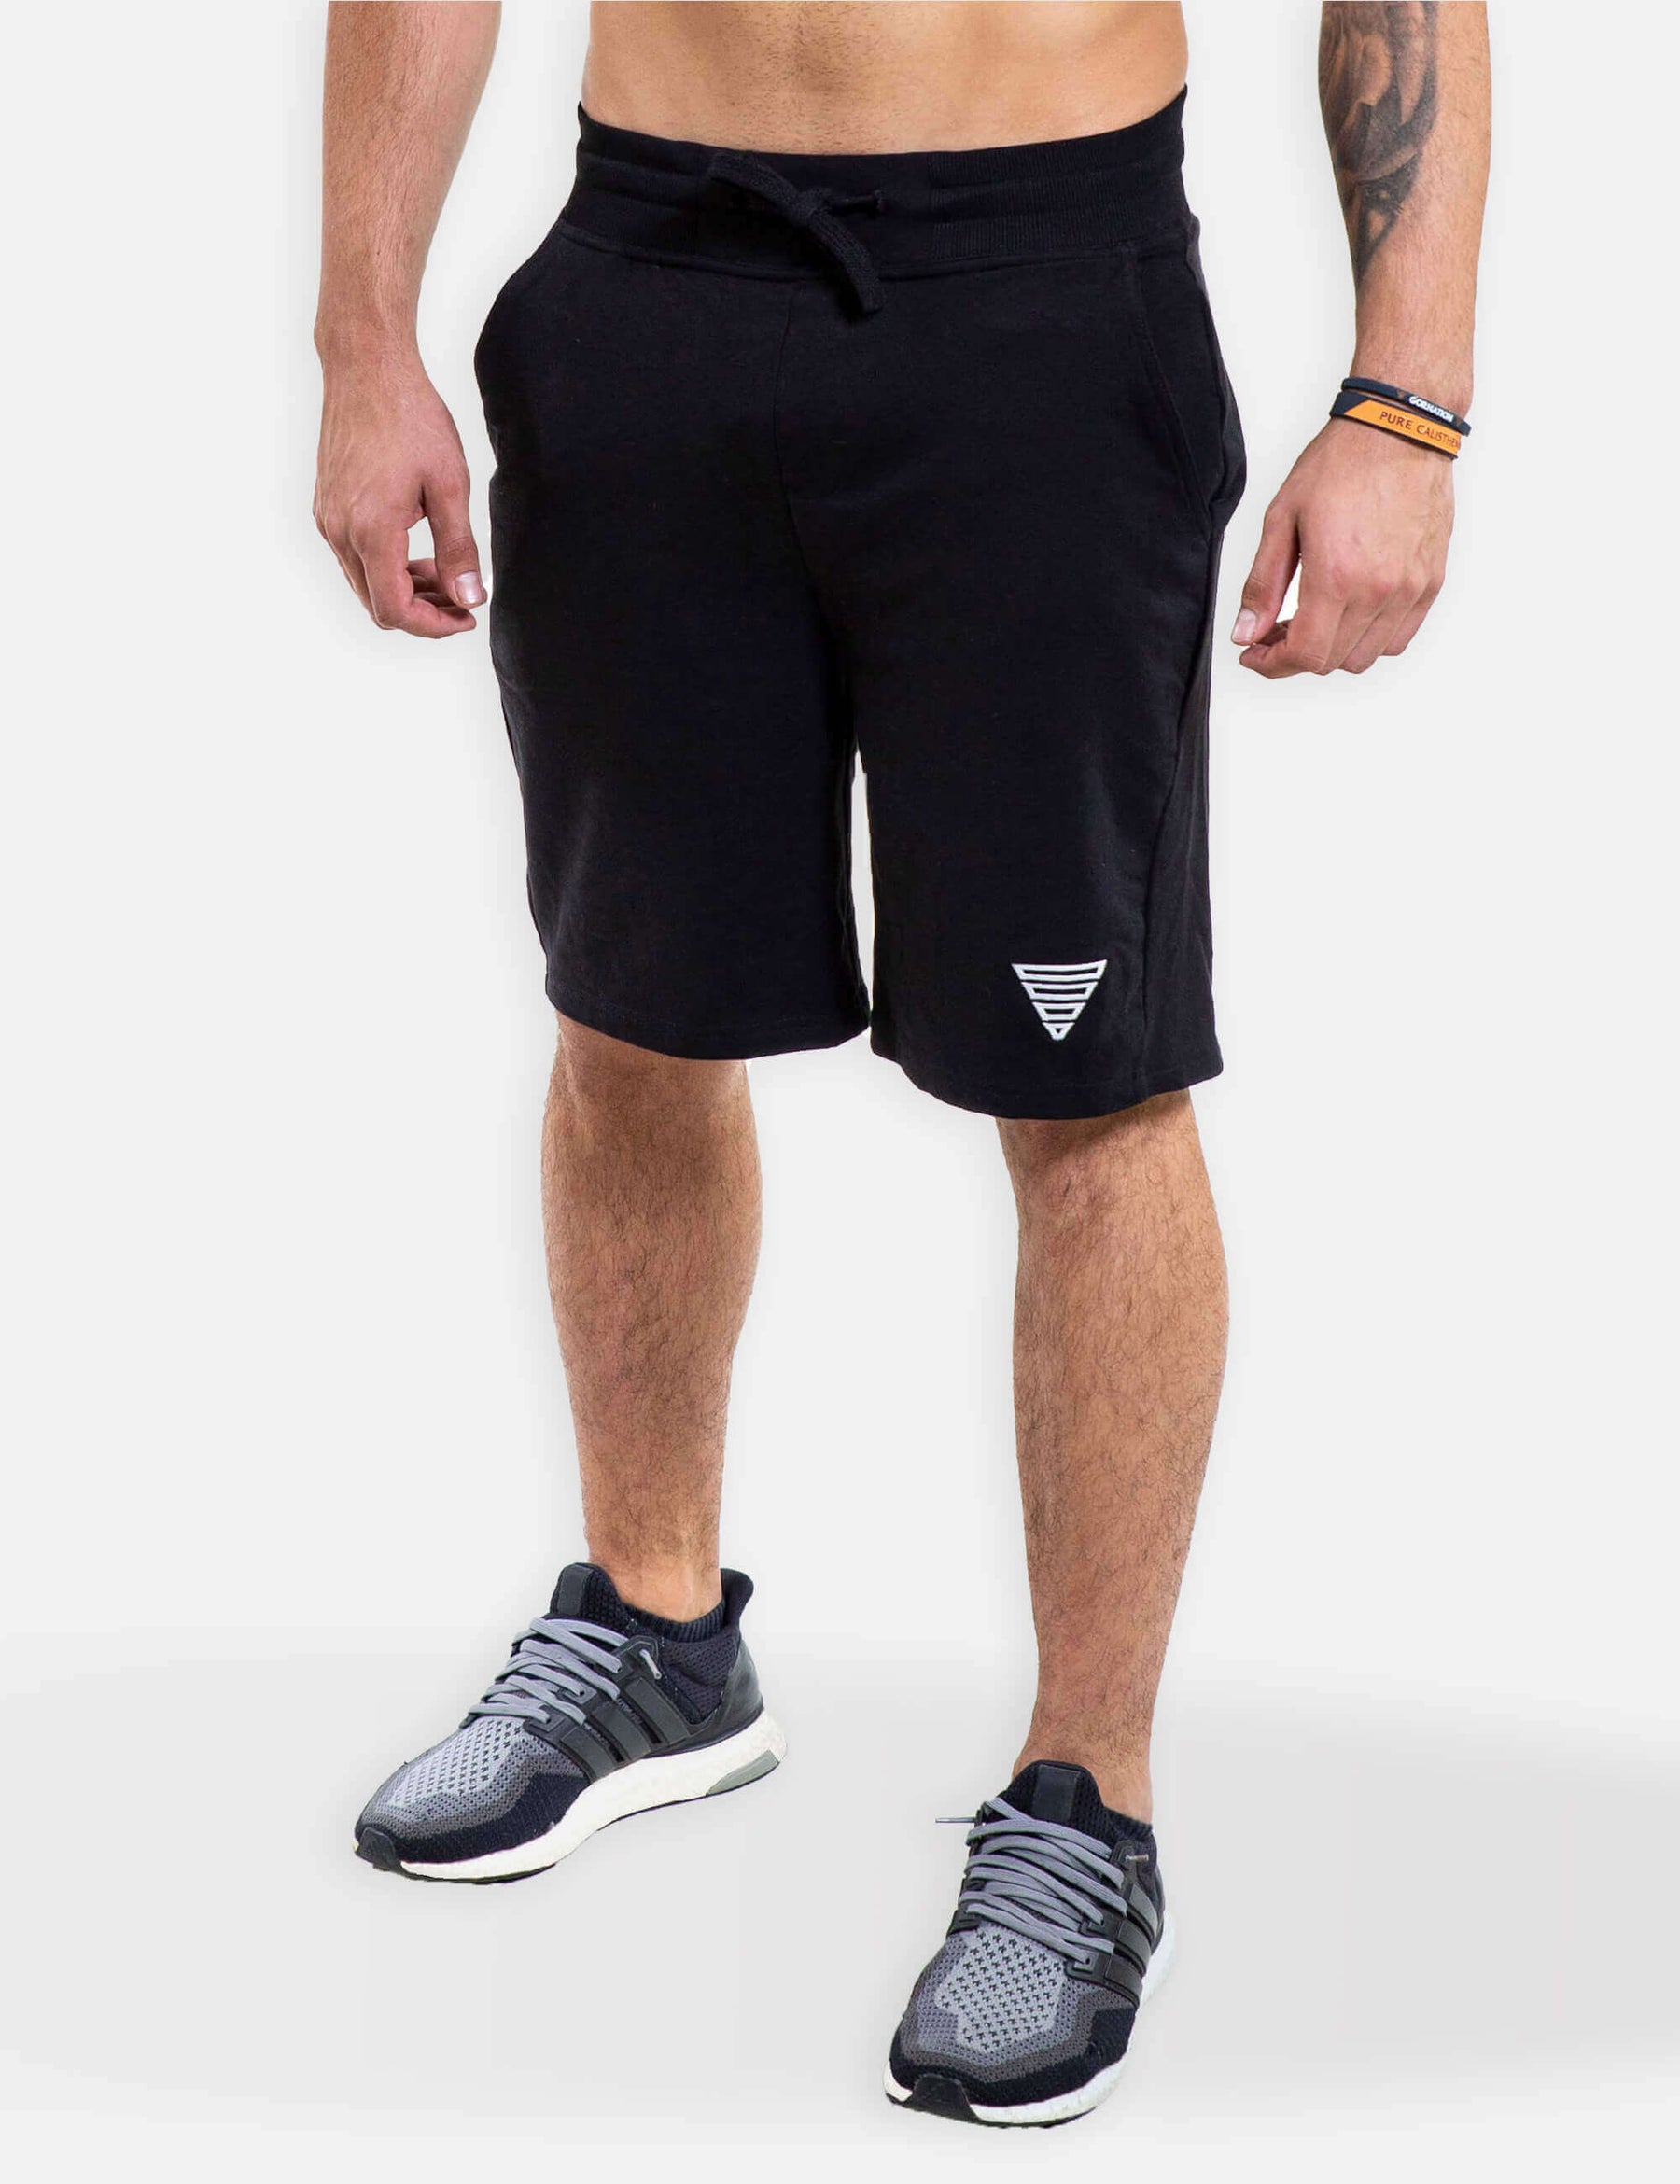 Stylish Calisthenics Sports Shorts For Effective Workouts